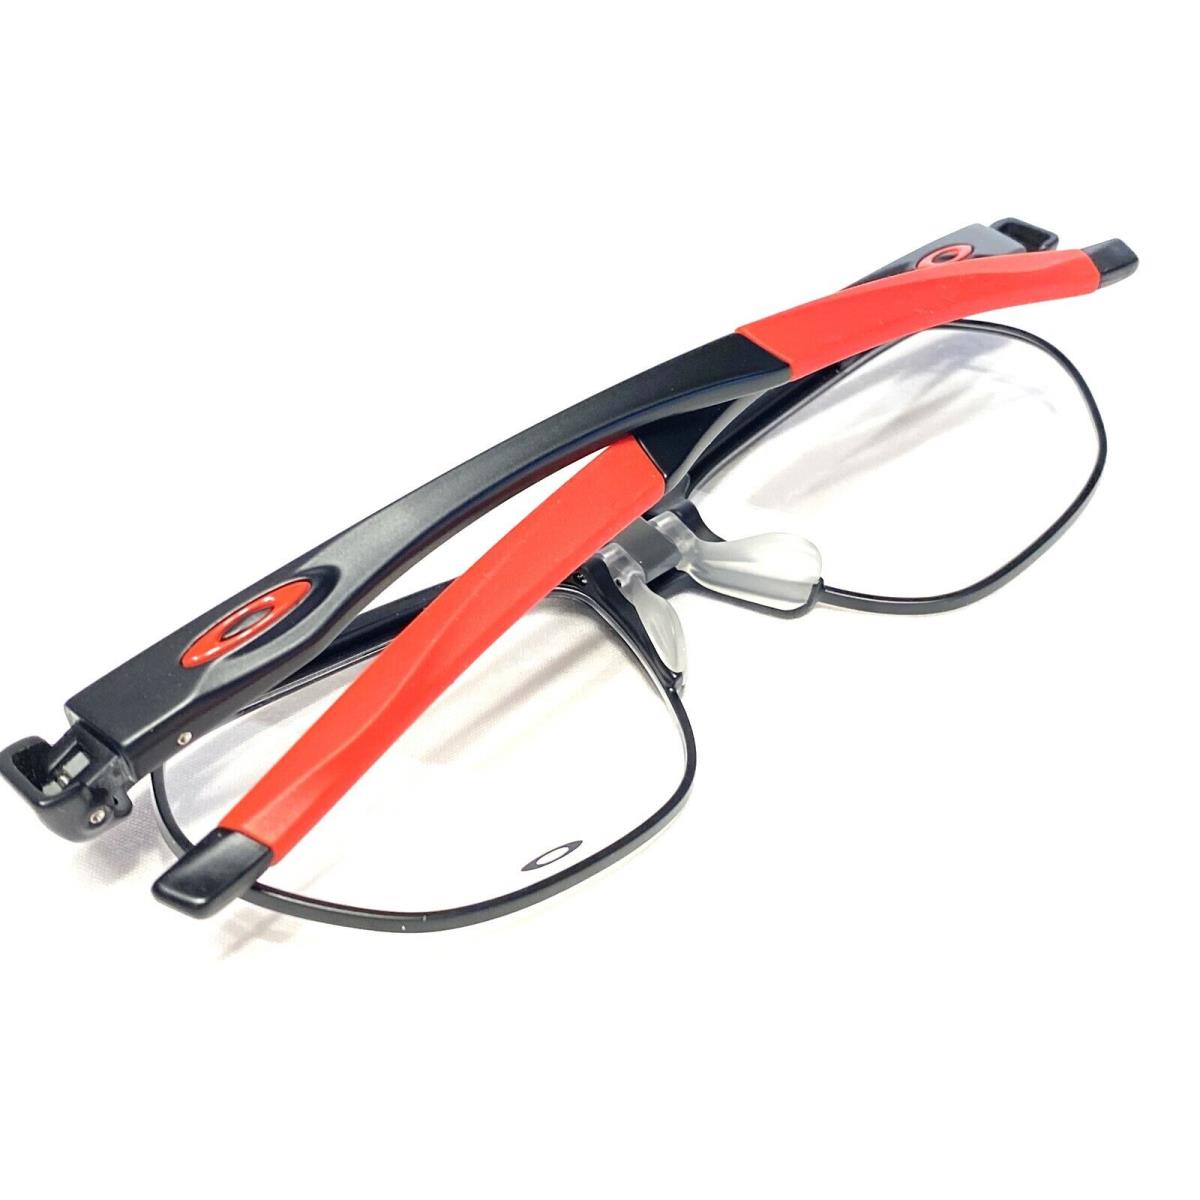 Oakley eyeglasses  - Satin Black/Red , Satin Black/Red Frame, 0456 Manufacturer